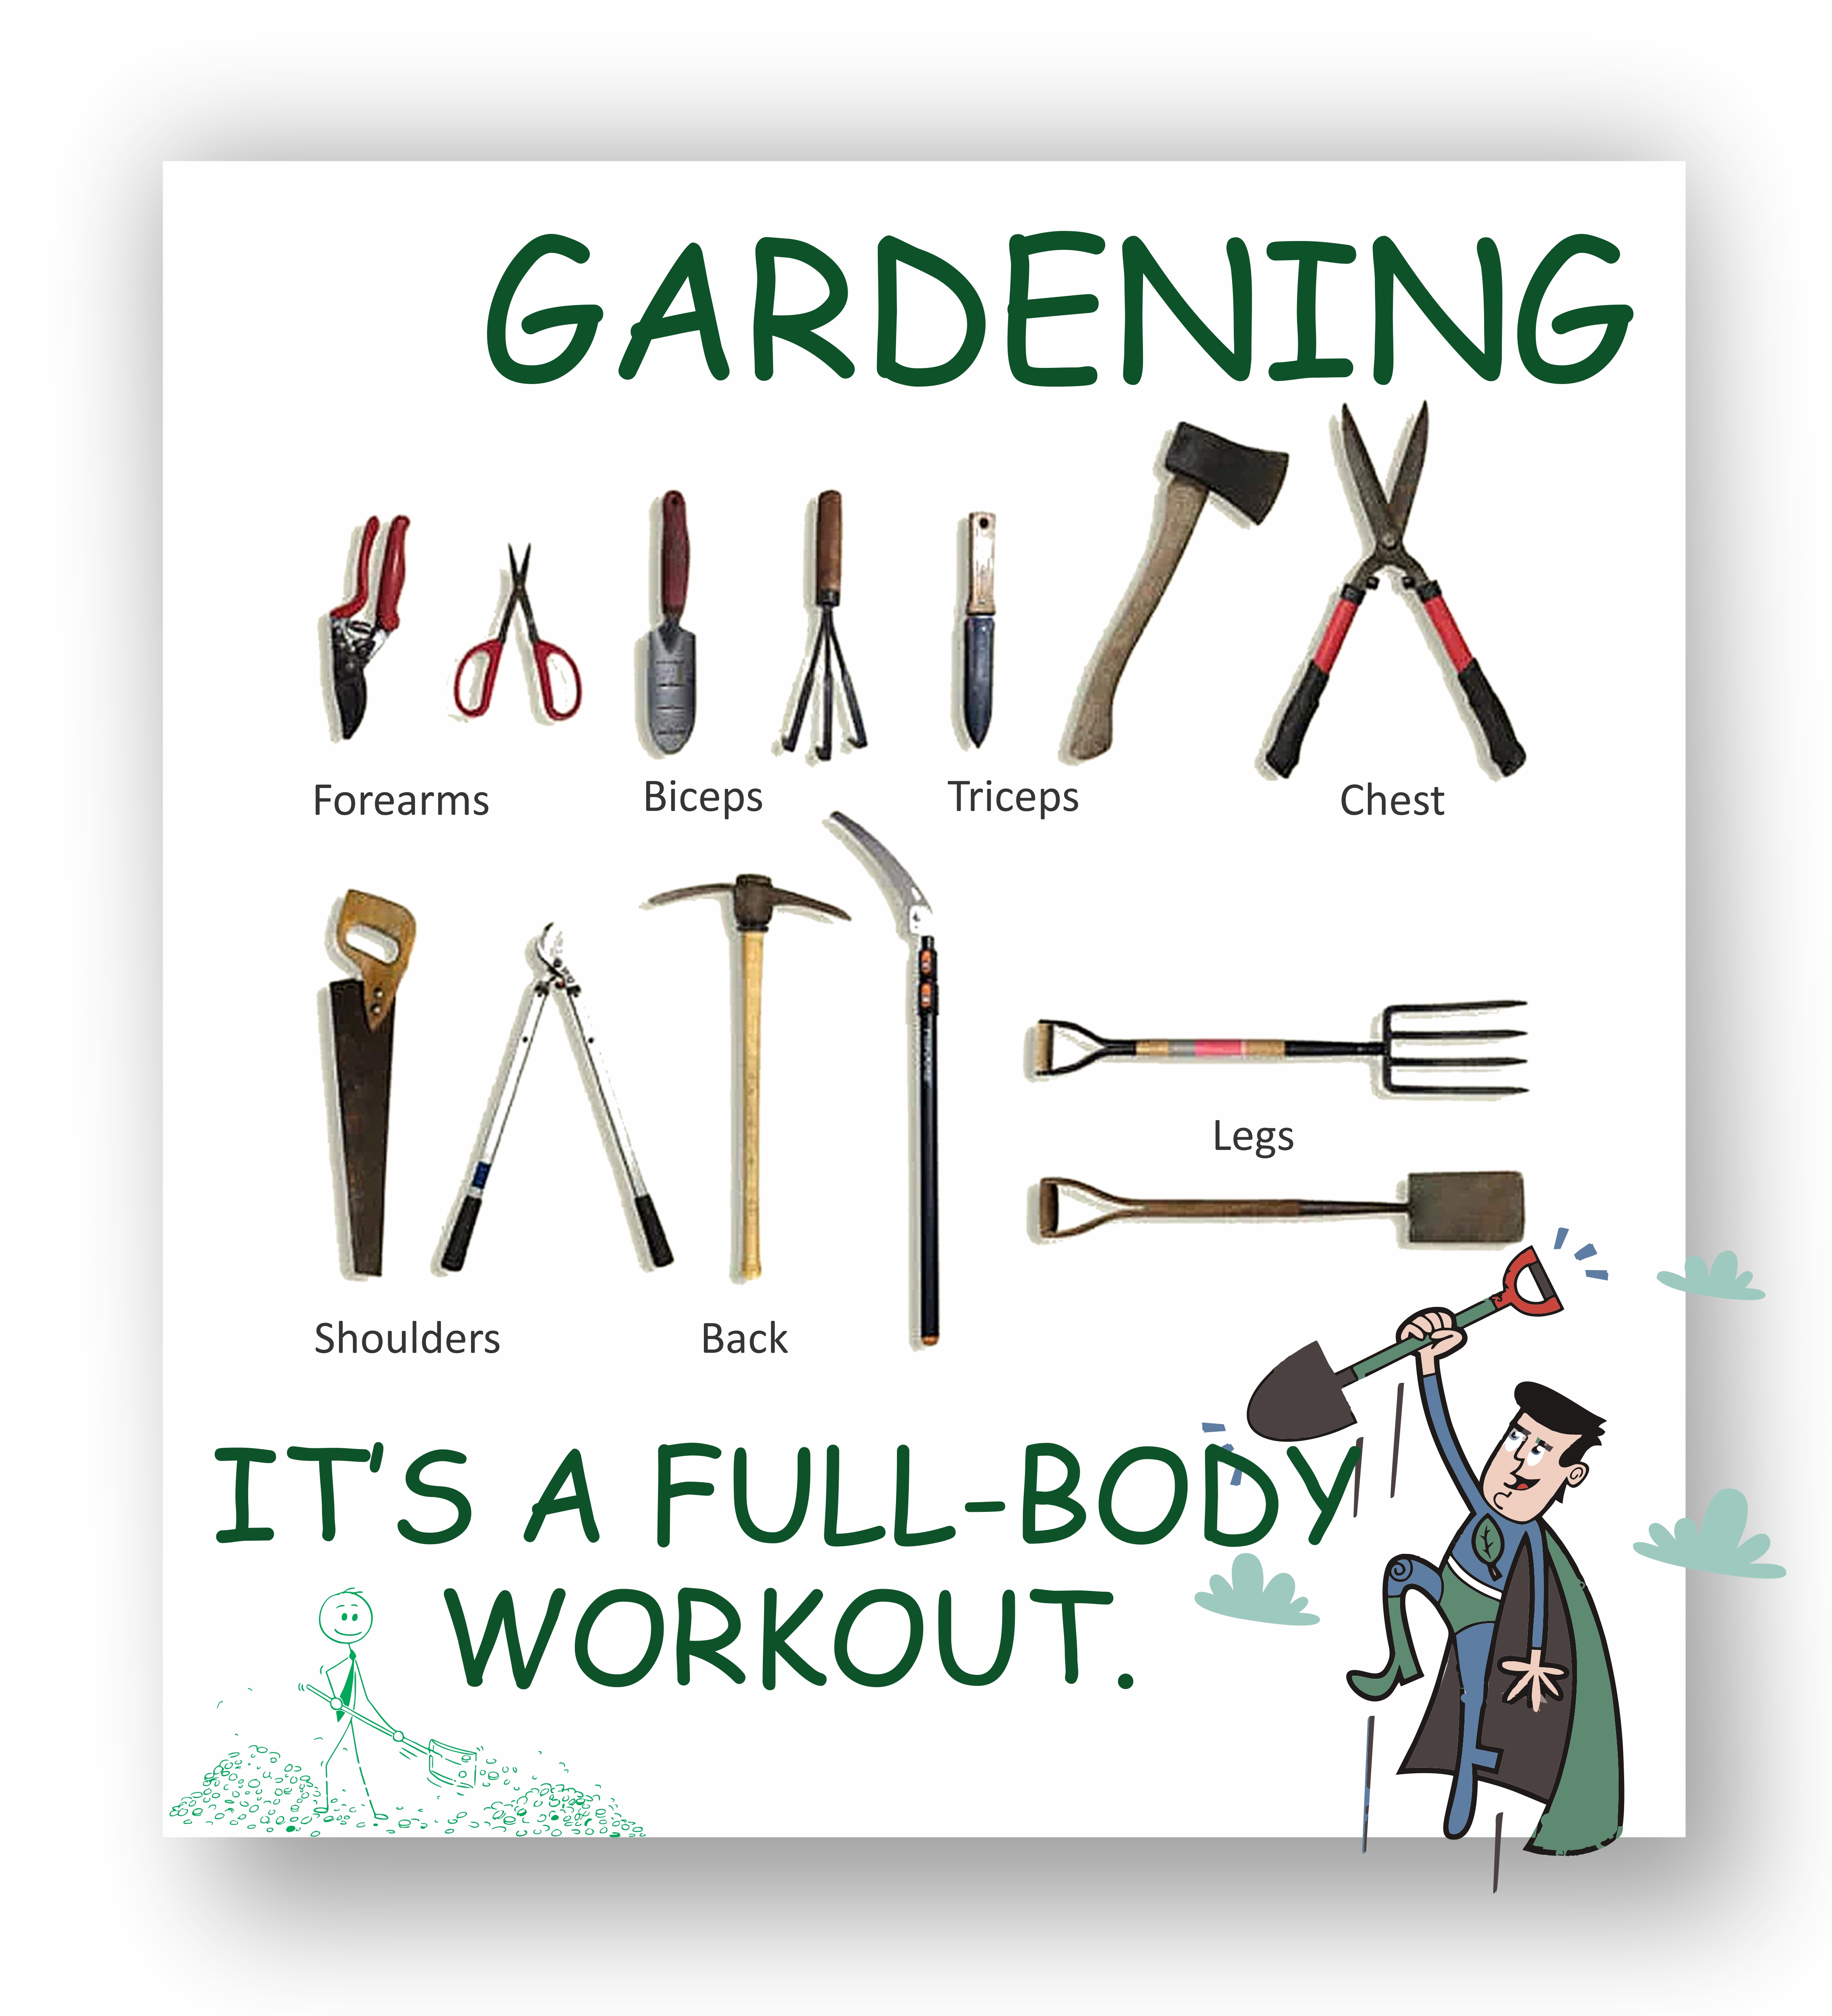 Gardening workout